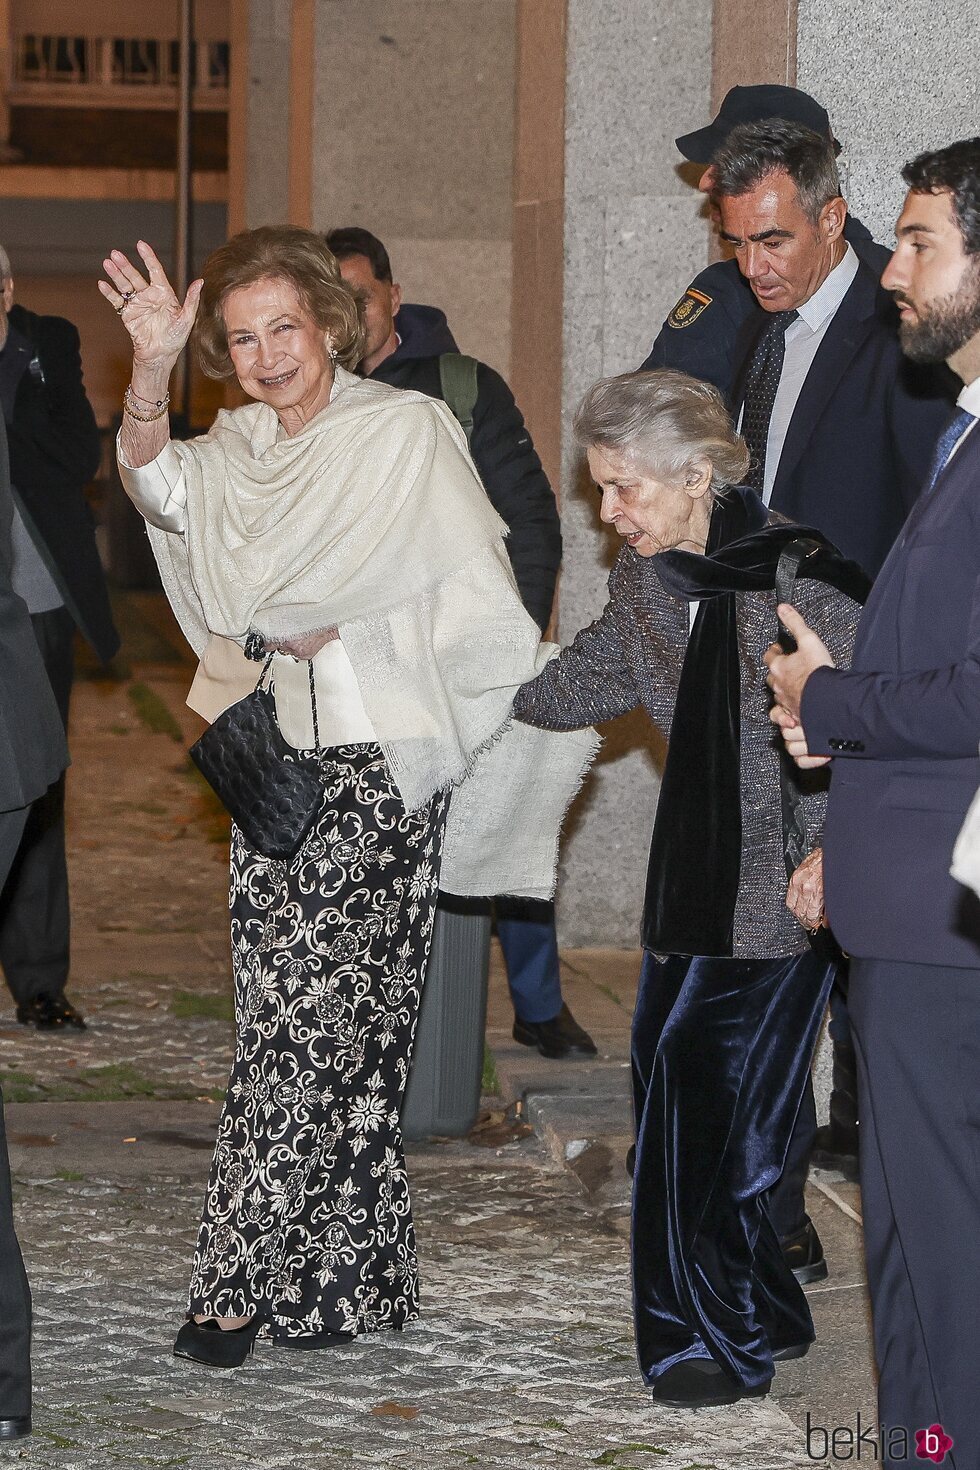 La Reina Sofía e Irene de Grecia, cogidas del brazo tras el concierto de Zubin Mehta en Madrid